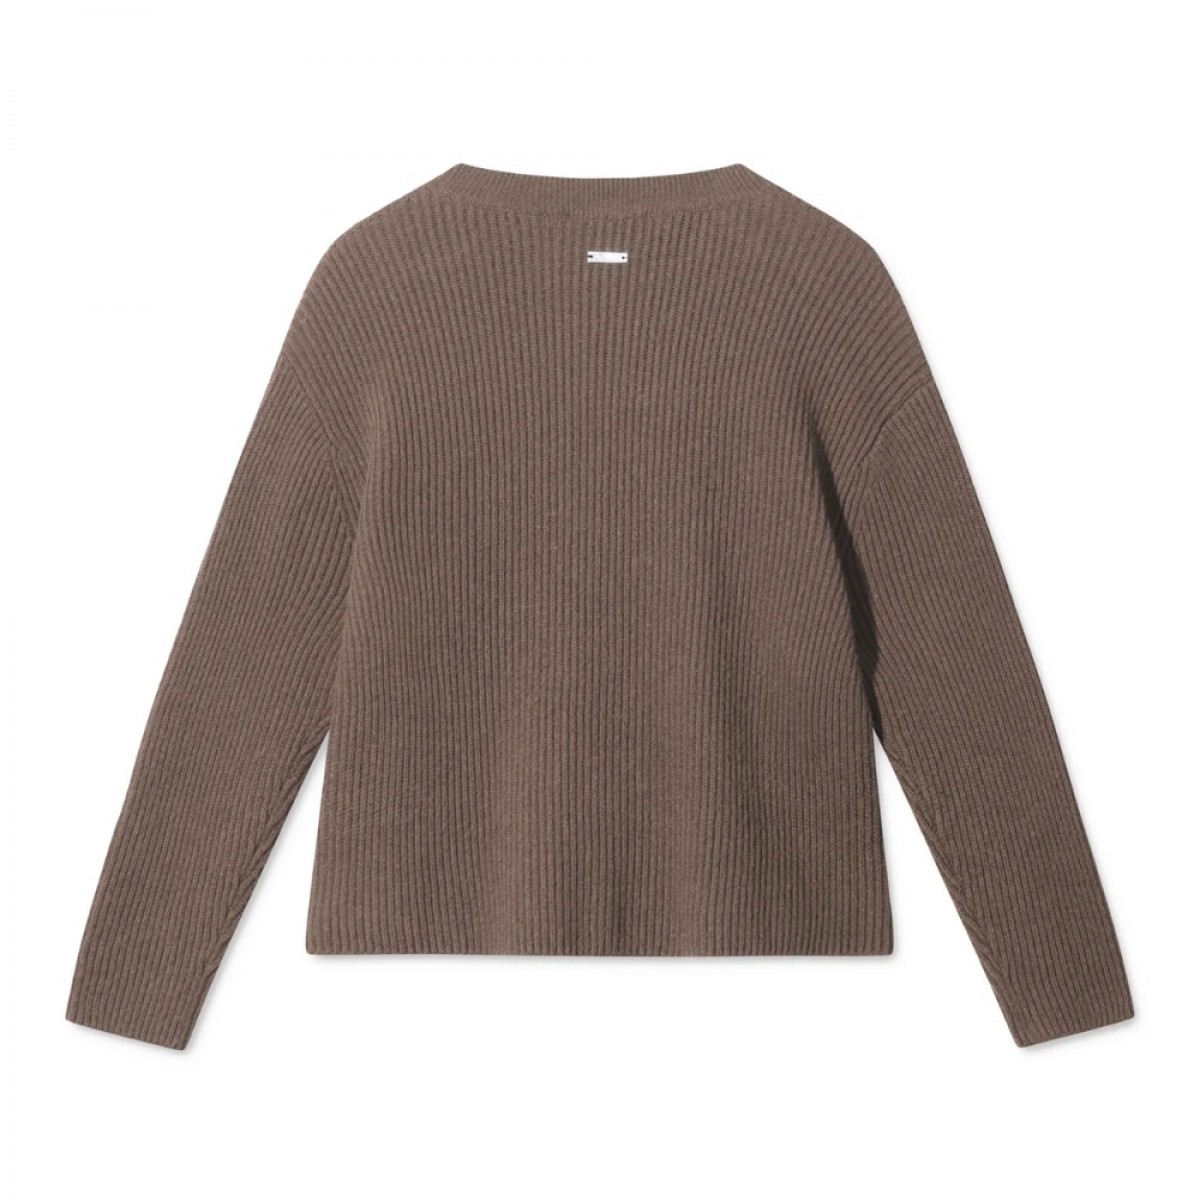 karli knit - dark brown - ryg